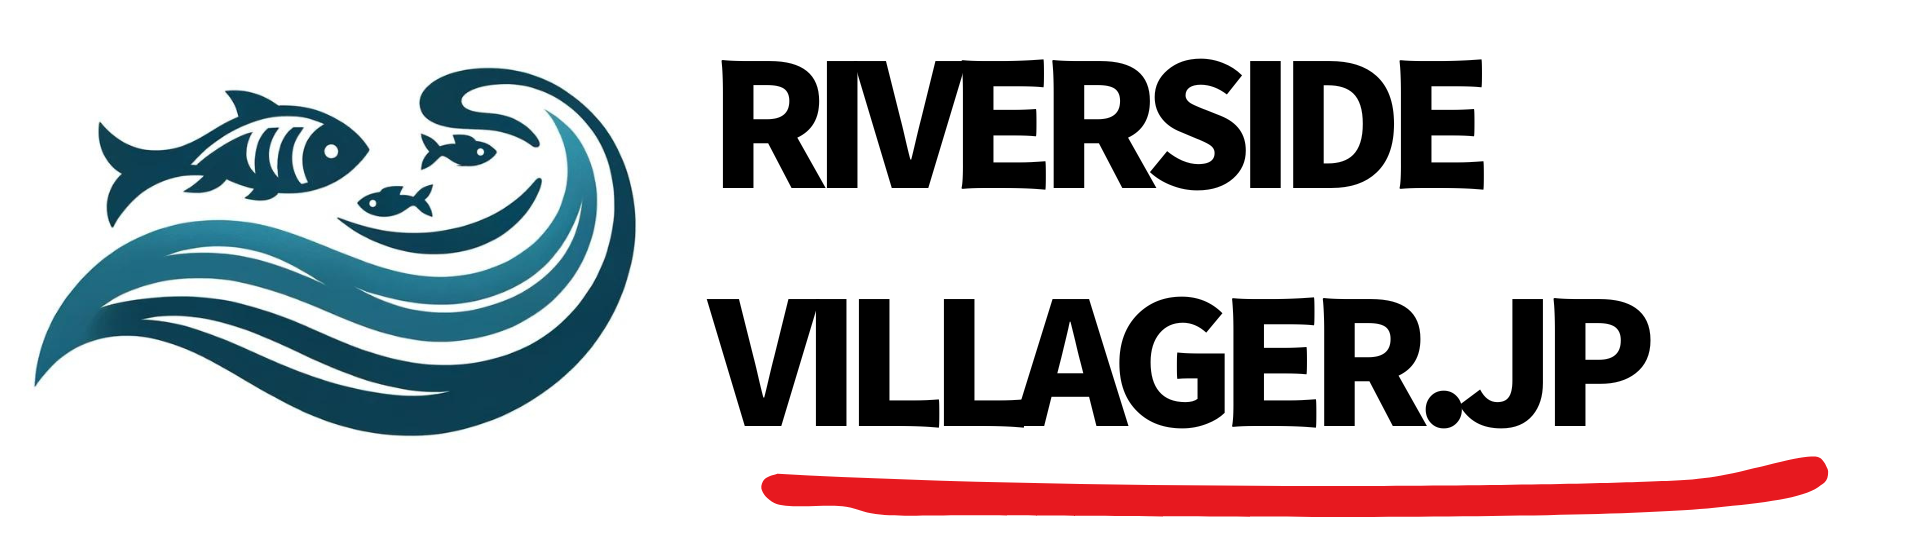 Riverside Villager .JP